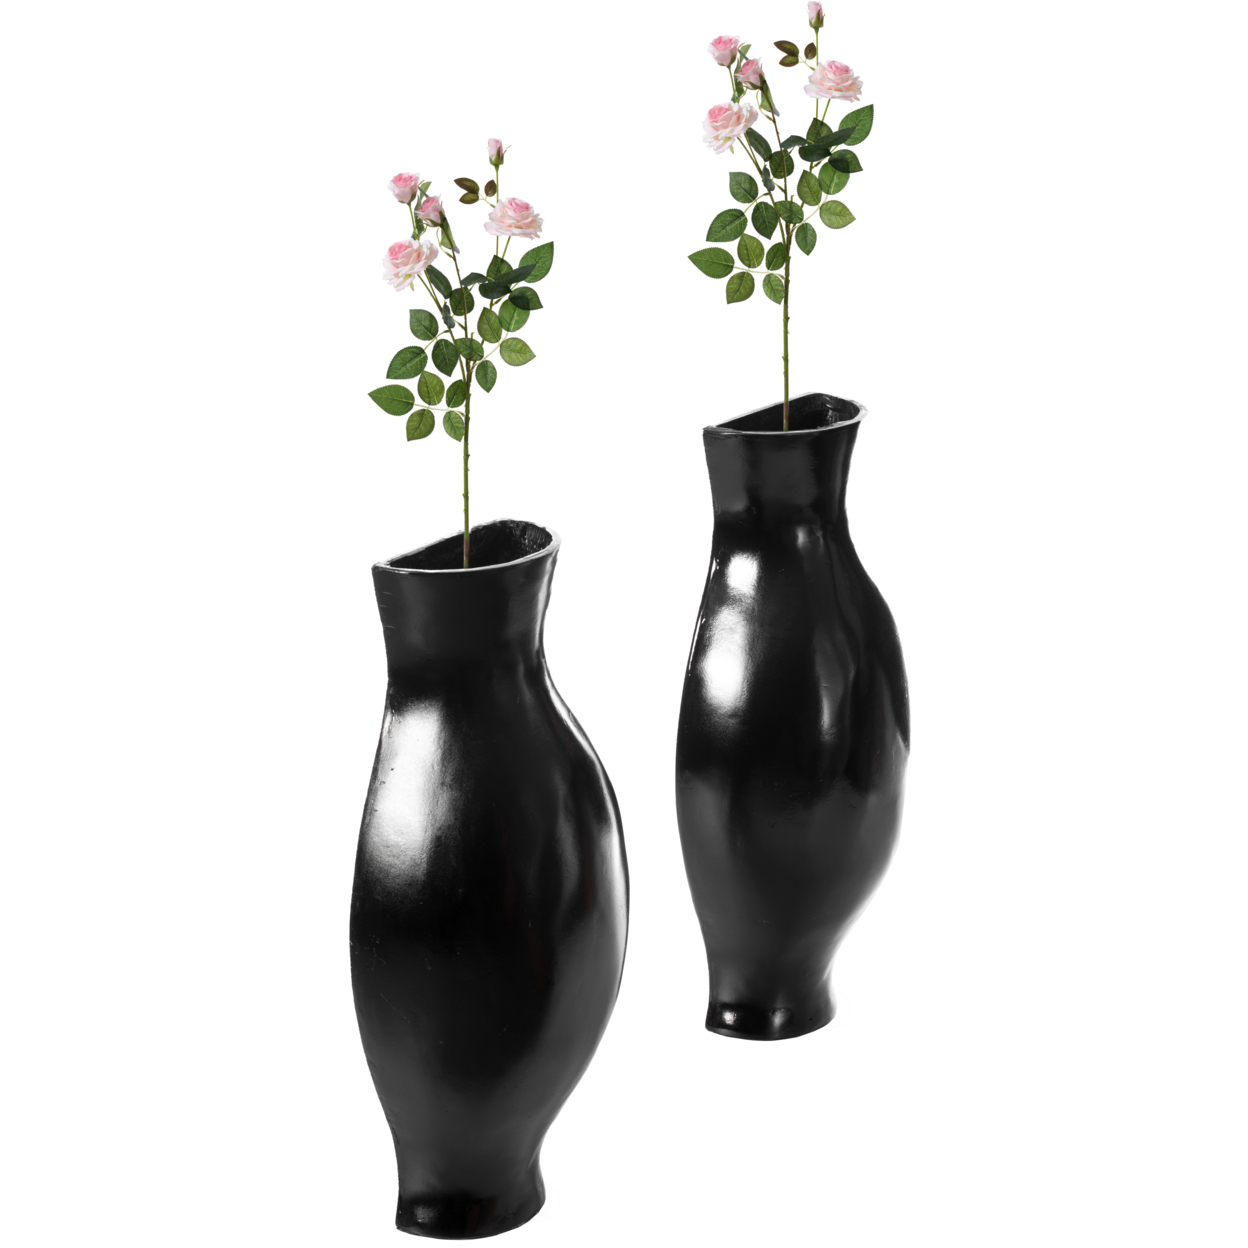 Tall Narrow Vase, Sleek Split Vase, Modern Floor Vase, Decorative Gift, Vase For Interior Design, 24.5 Inch Vase - Set Of 2 White